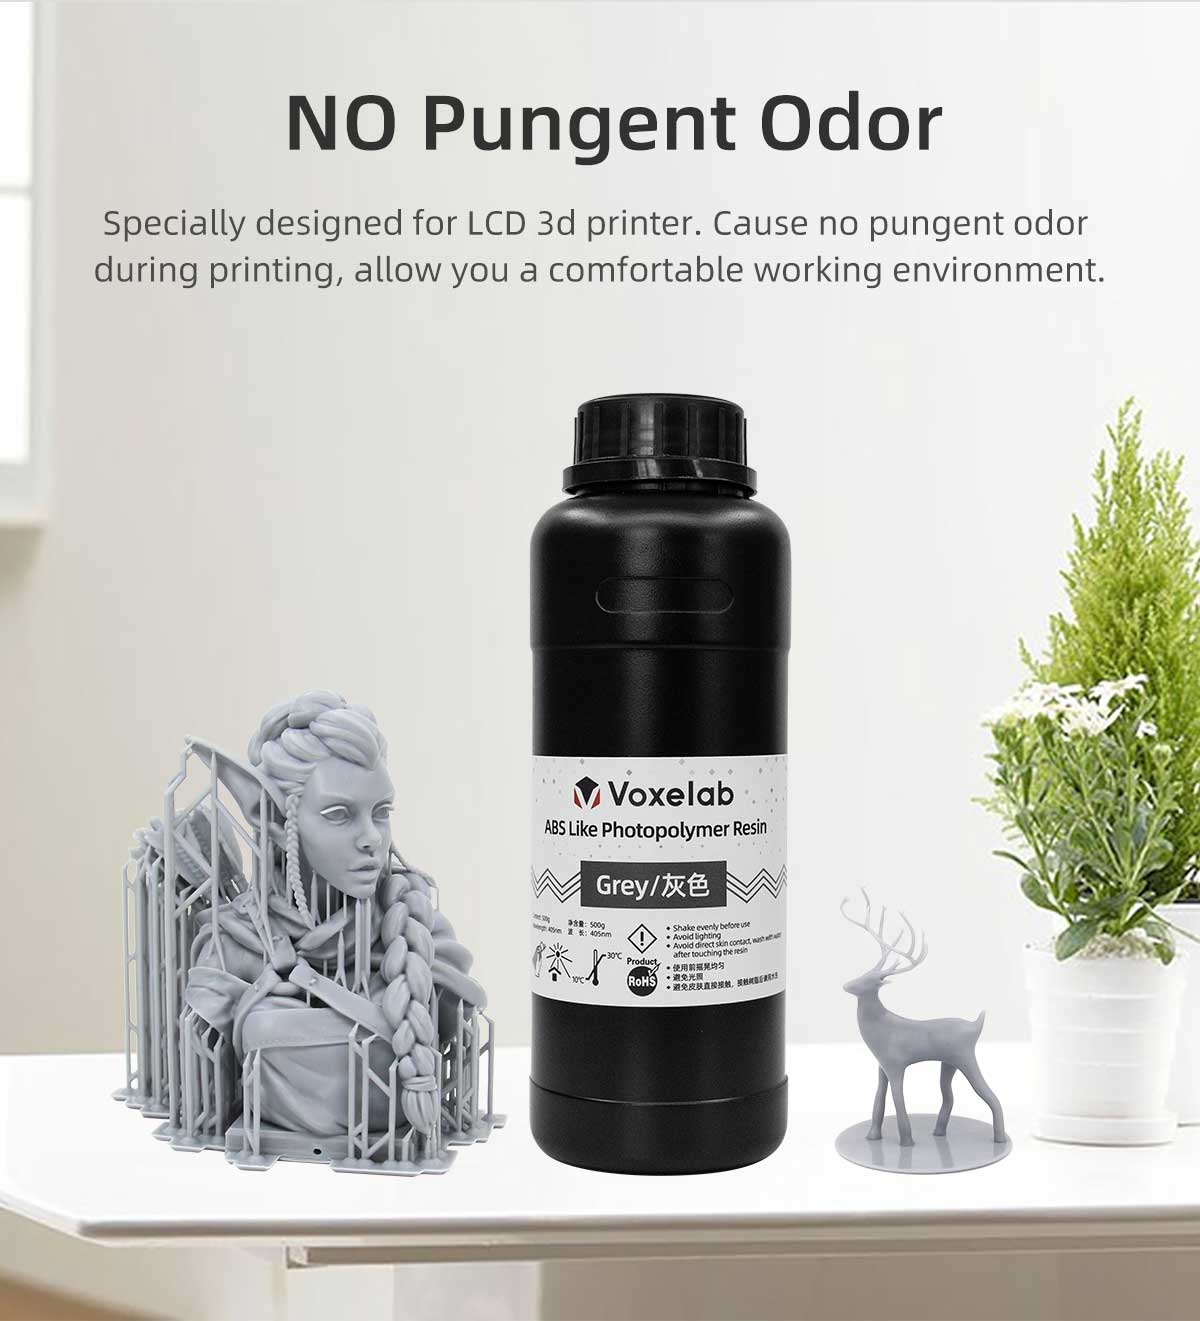 odor free resin | Voxelab